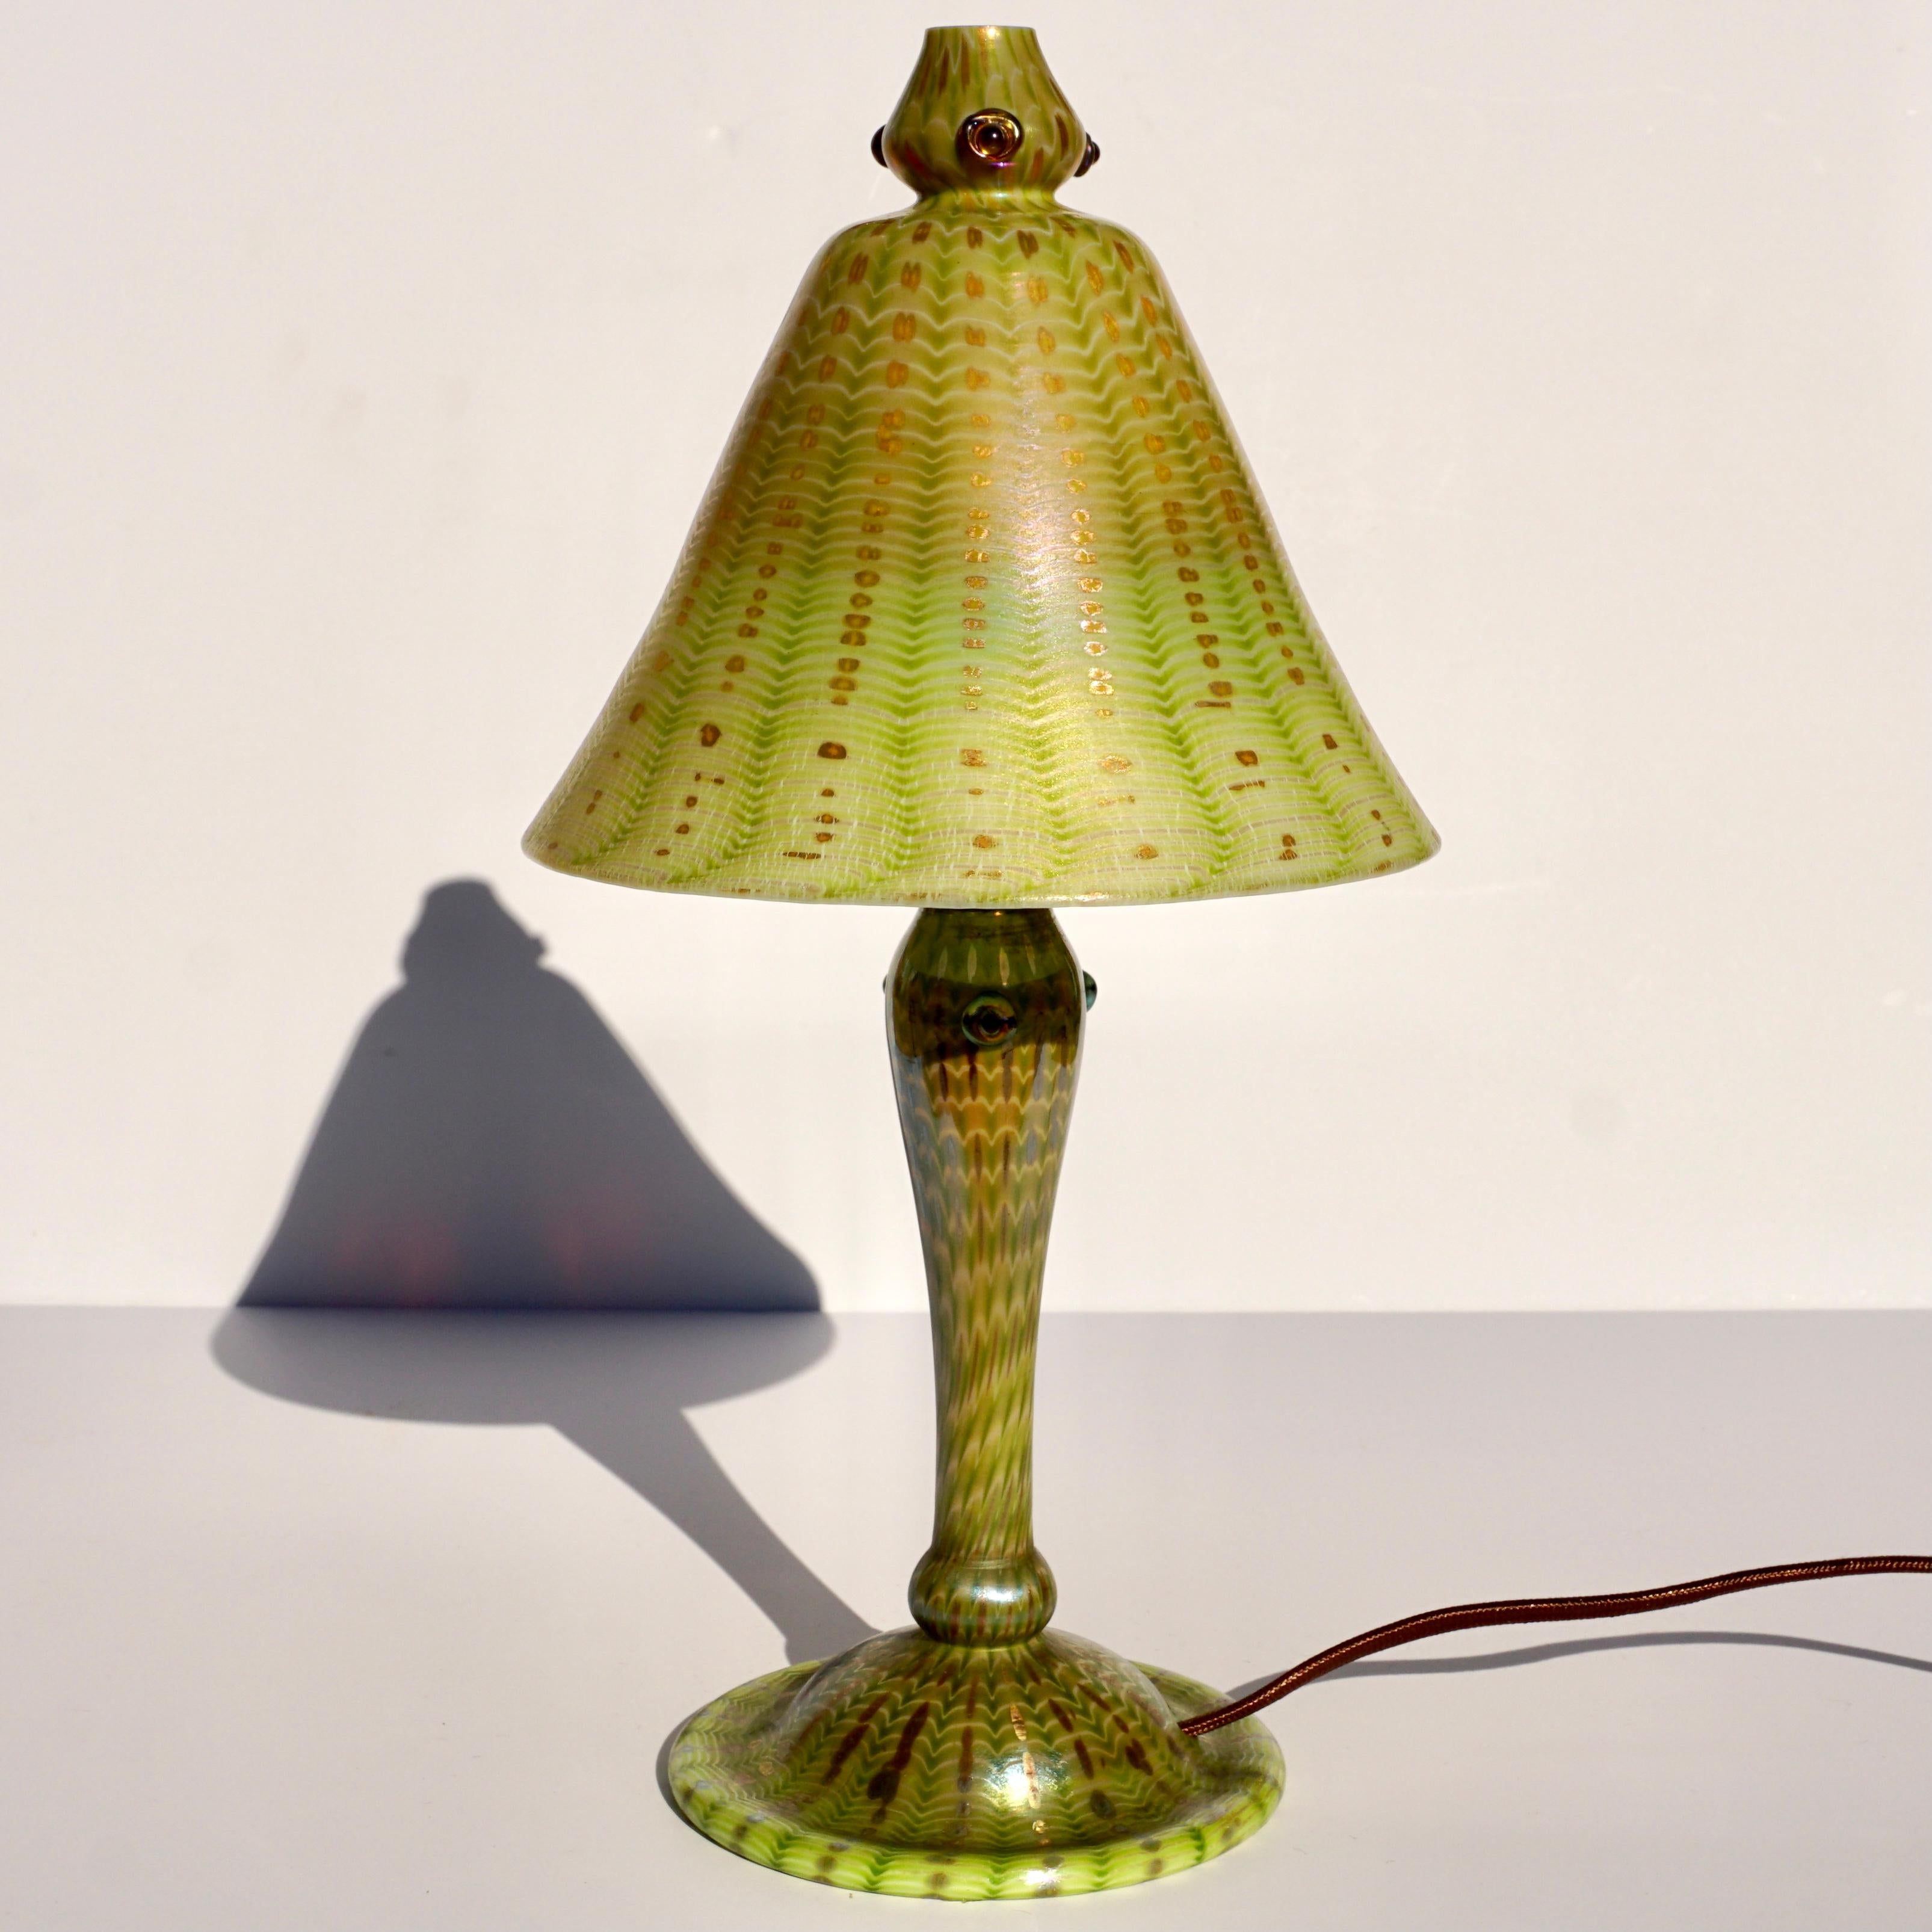 Tiffany Favrile Arabian Lampe. Jugendstil, um 1910 

Arabische Tiffany-Lampe mit Schirm und Sockel aus geblasenem Glas. Der Schirm ist mit einem grün schillernden Reißverschlussmuster vor einem wellenförmigen goldgelben Hintergrund verziert. Die